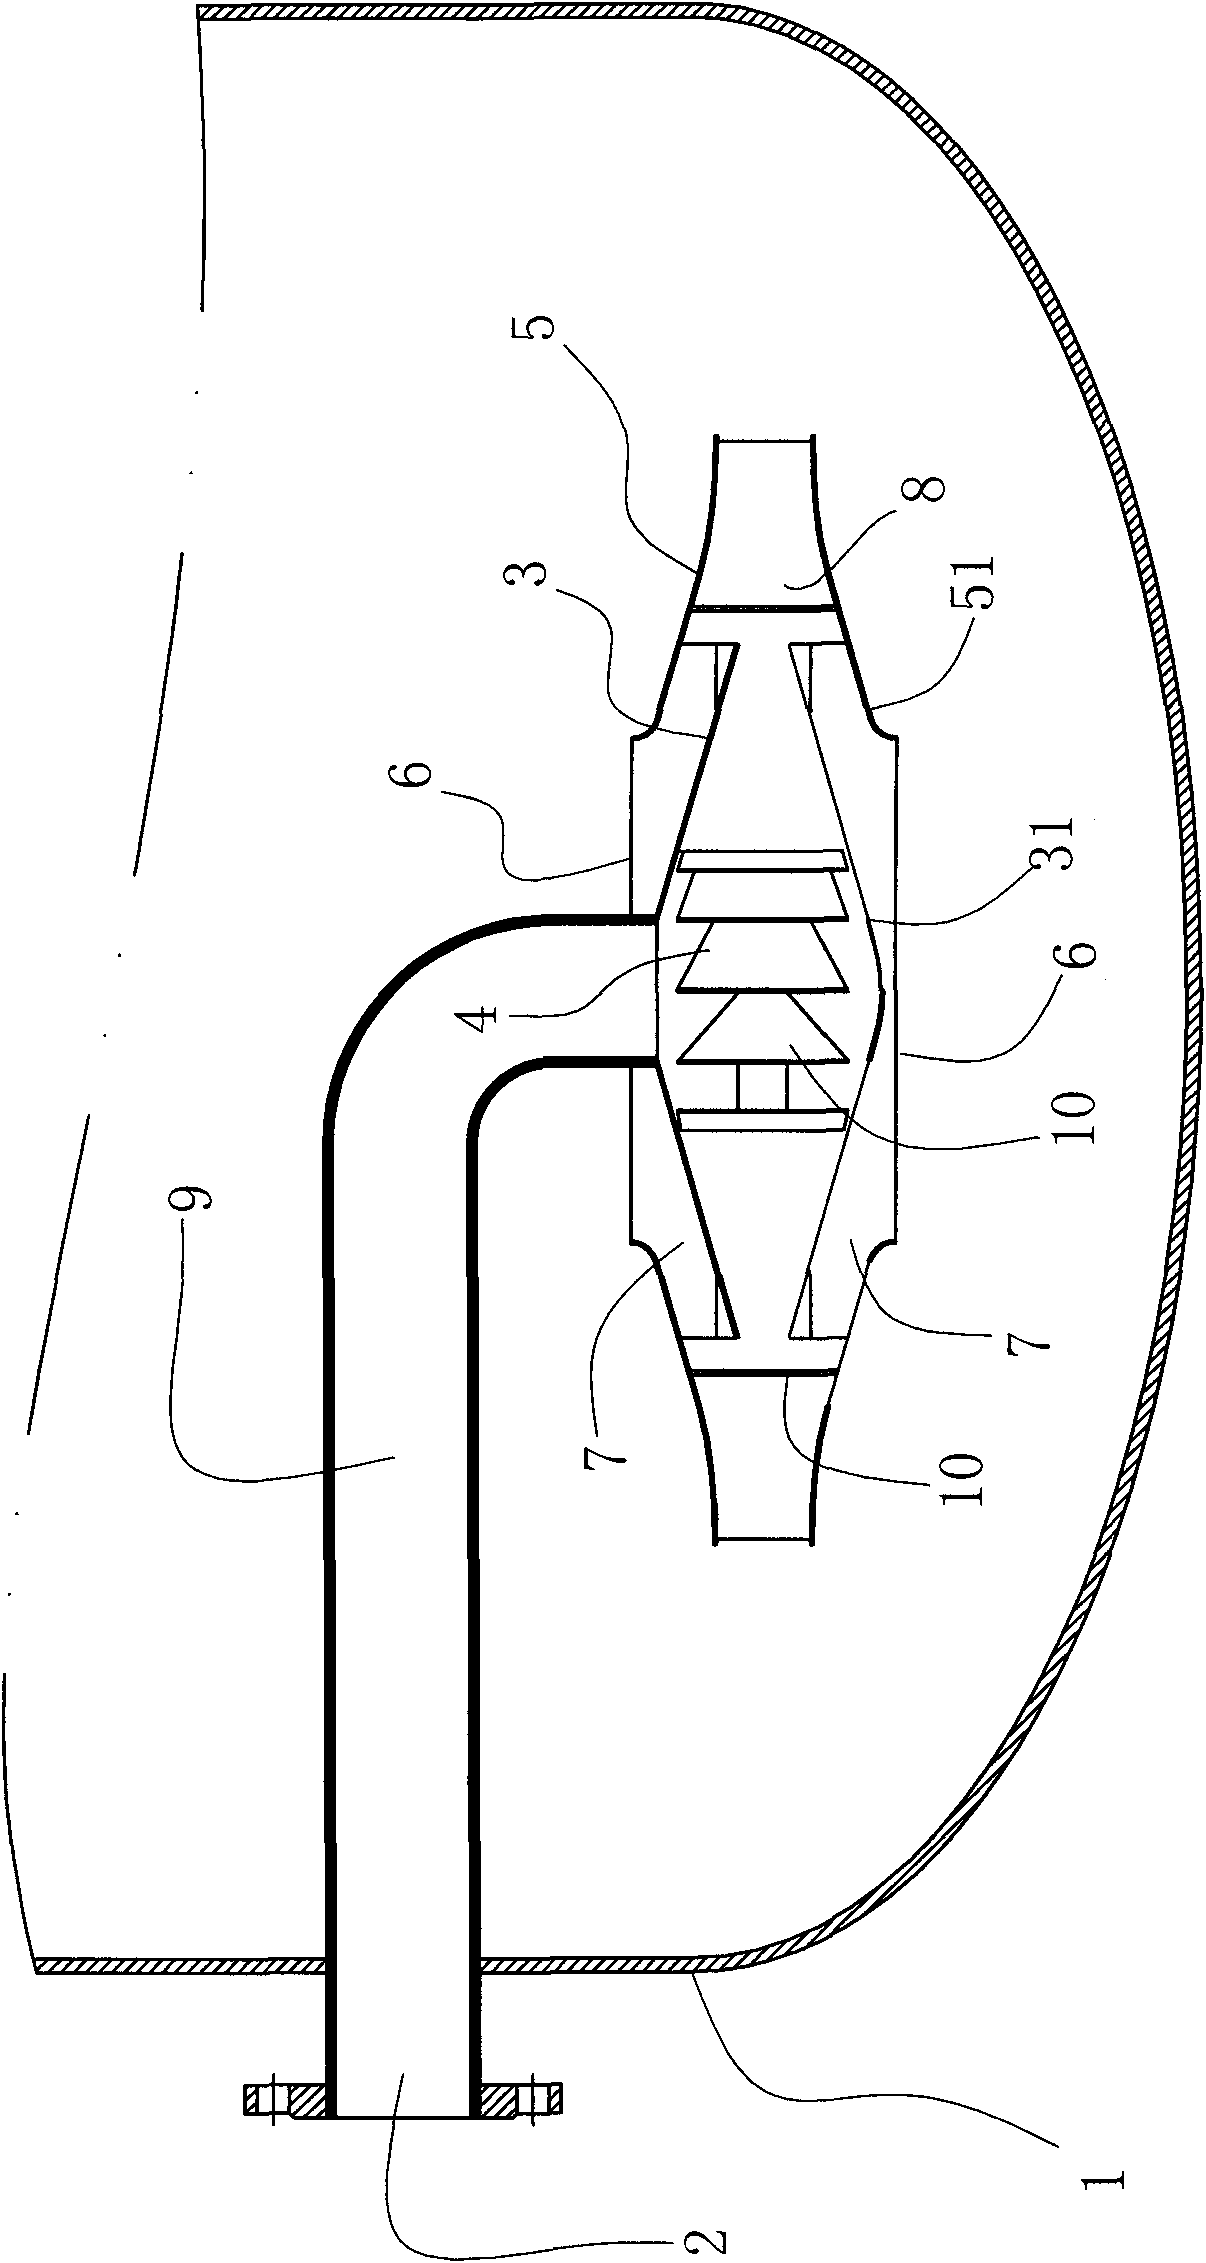 Rotational flow mixer